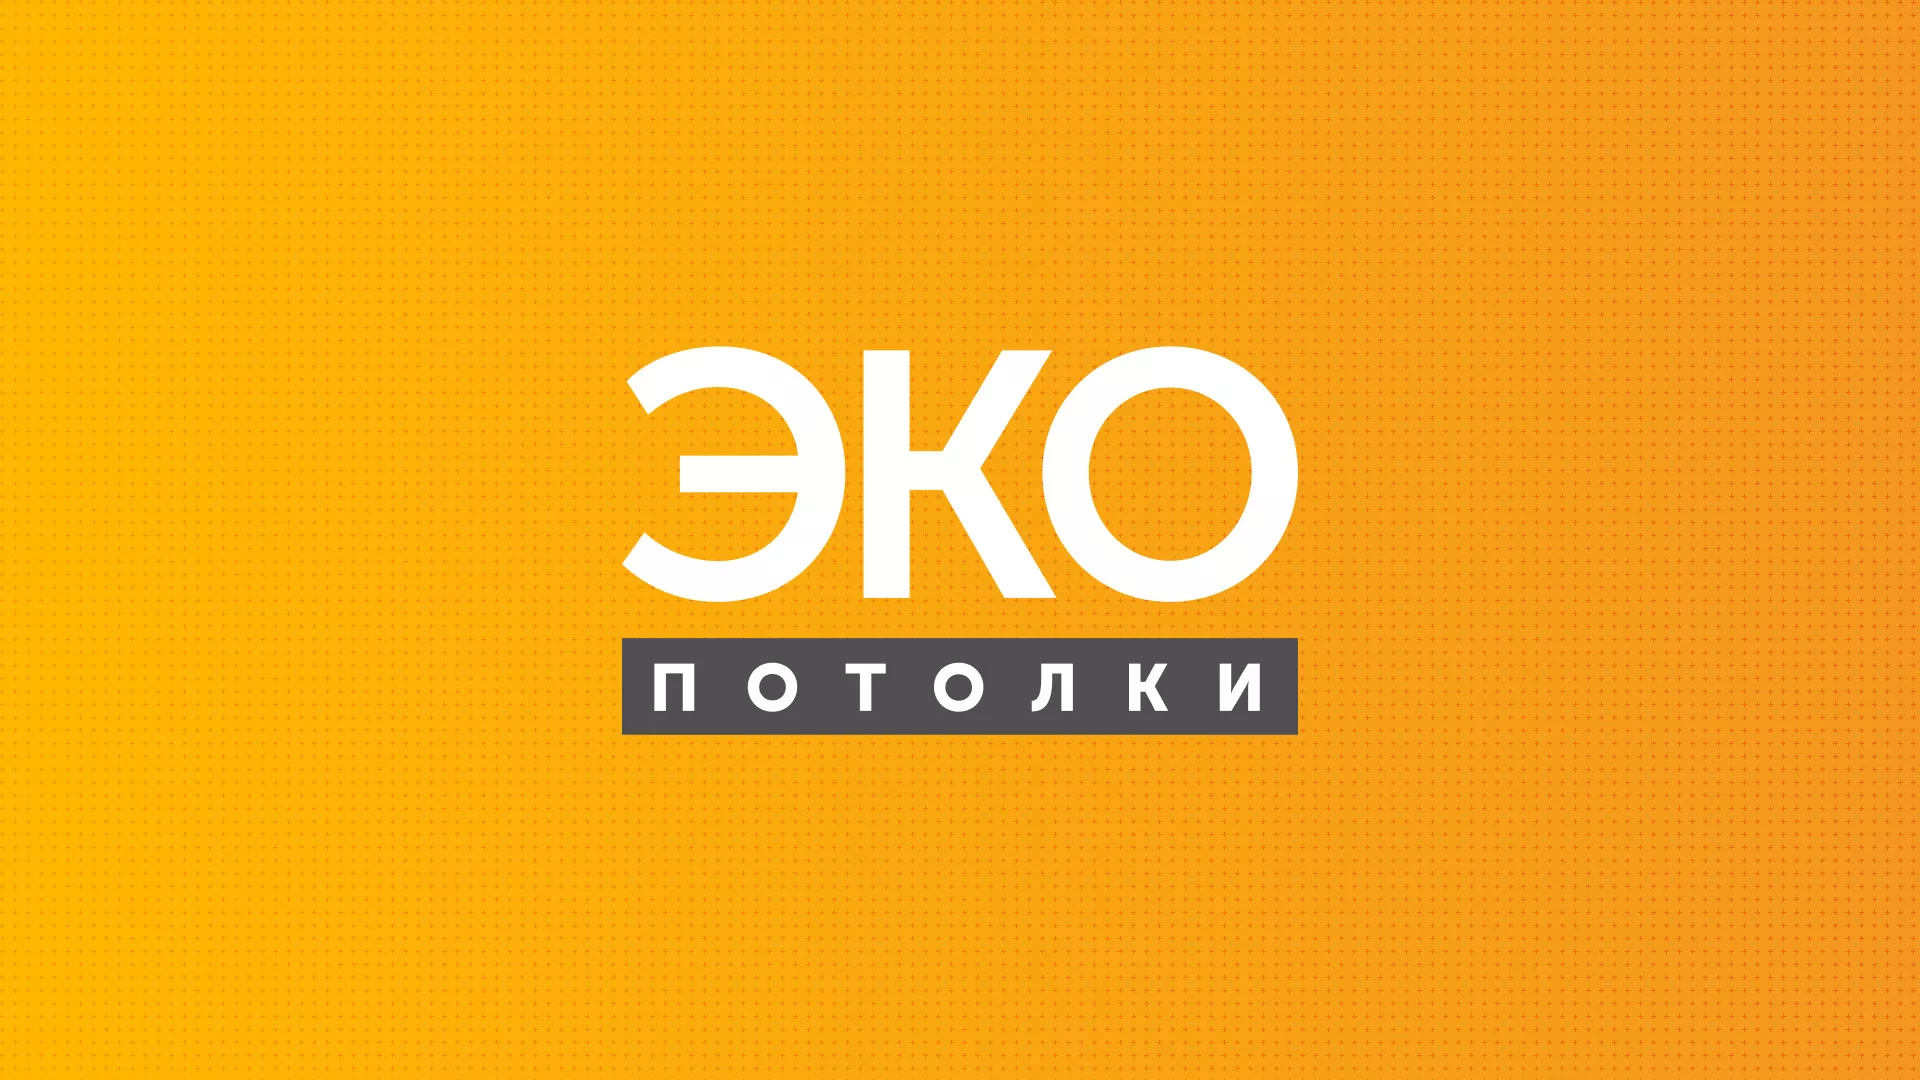 Разработка сайта по натяжным потолкам «Эко Потолки» в Козловке